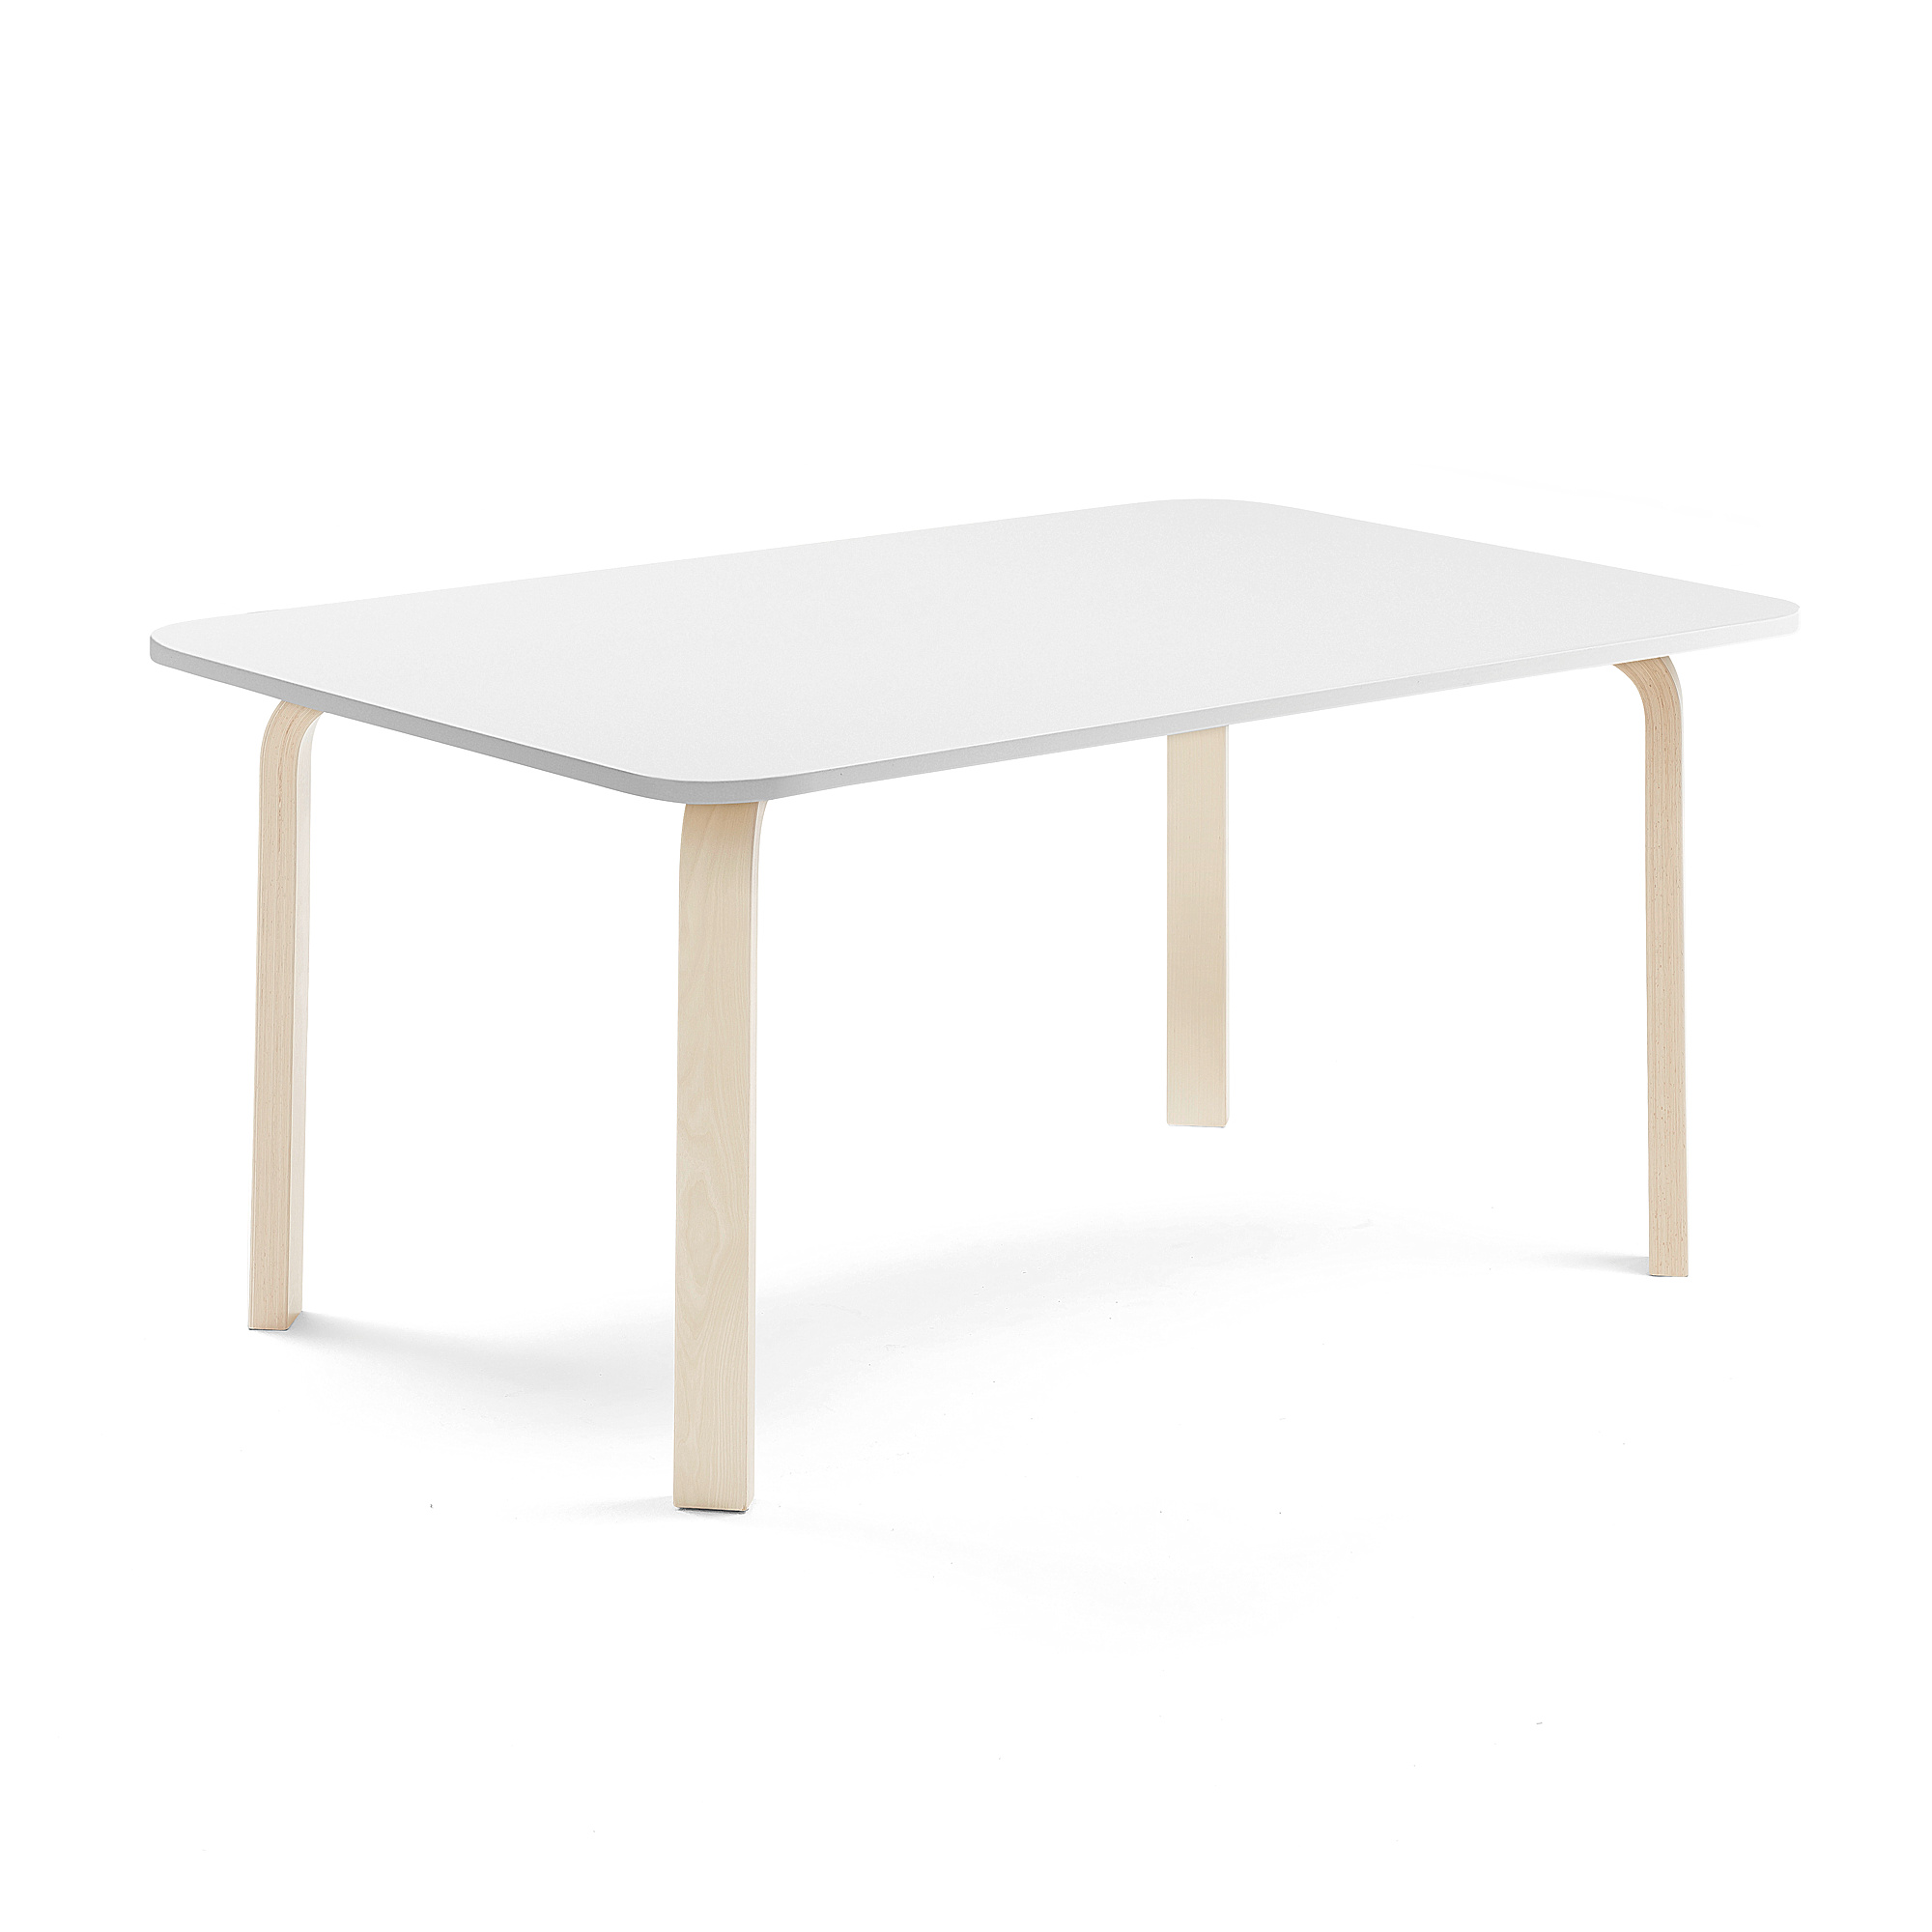 Stůl ELTON, 1400x800x590 mm, bříza, akustická HPL deska, bílá